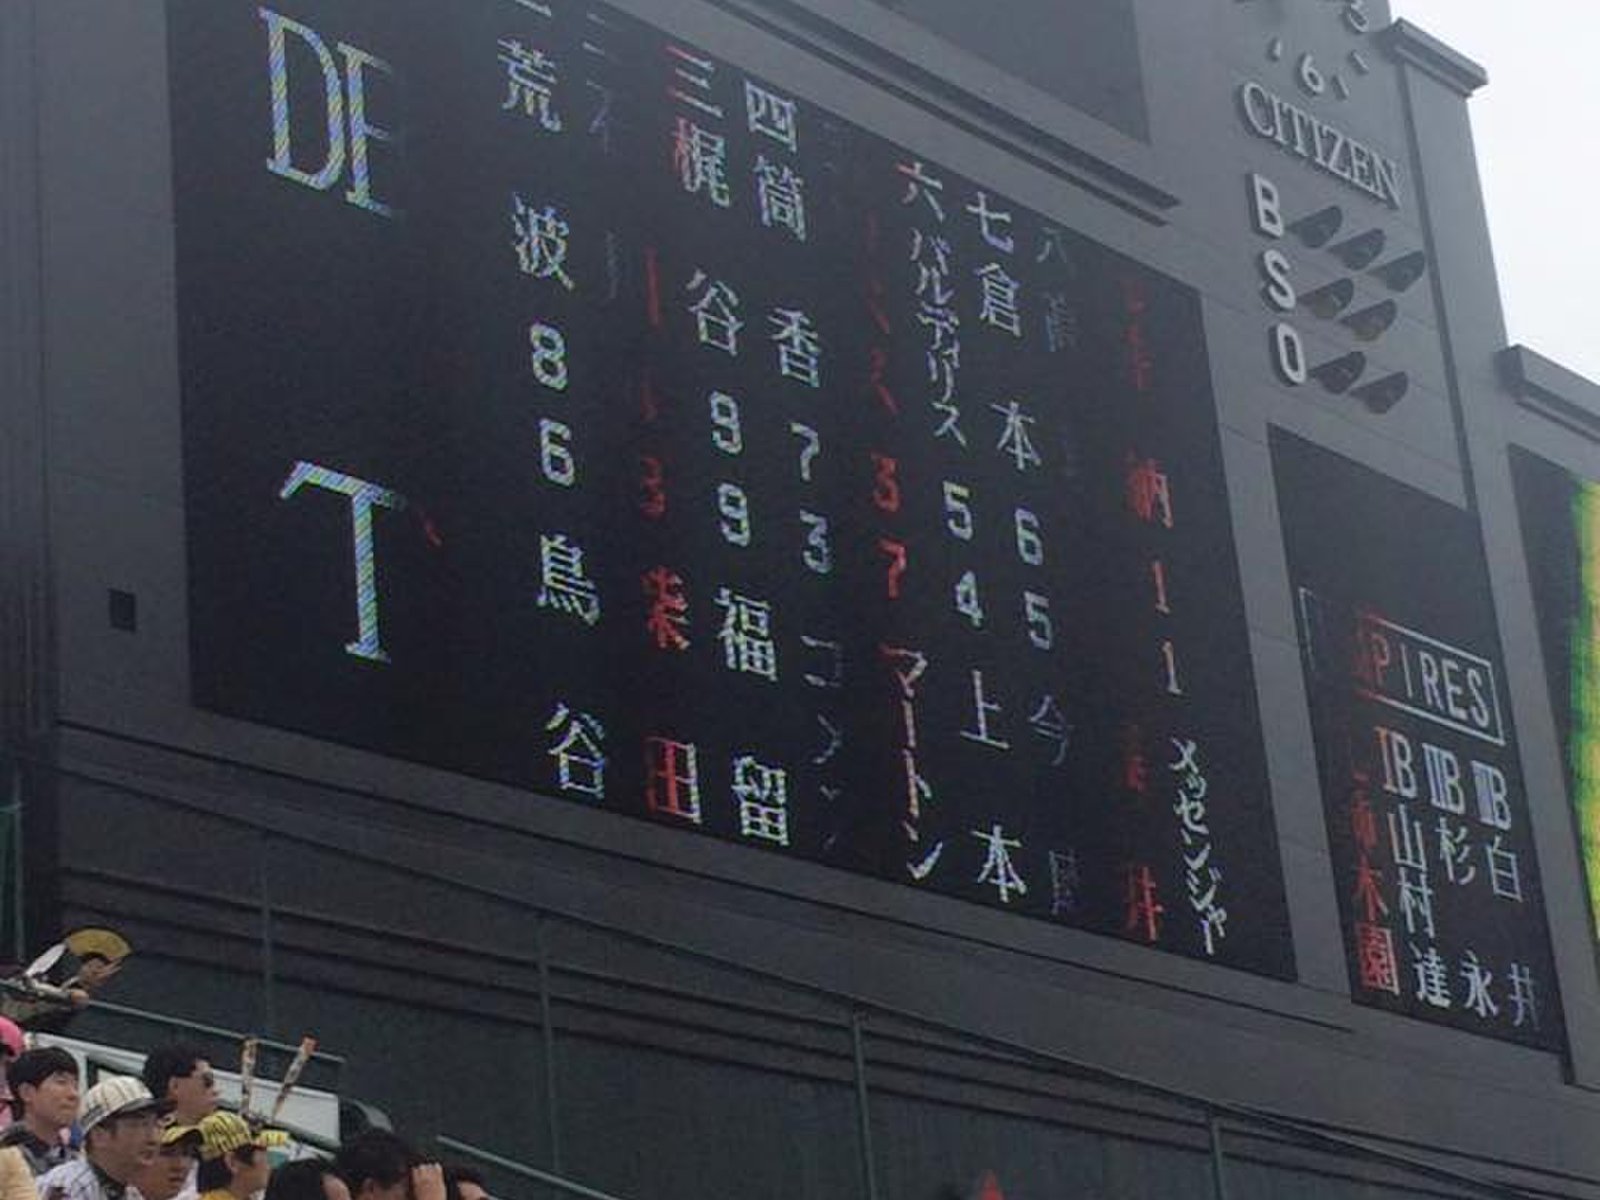 甲子園球場で阪神タイガースを応援してきた 選手が食べているカレーライスも食べてきた Playlife プレイライフ